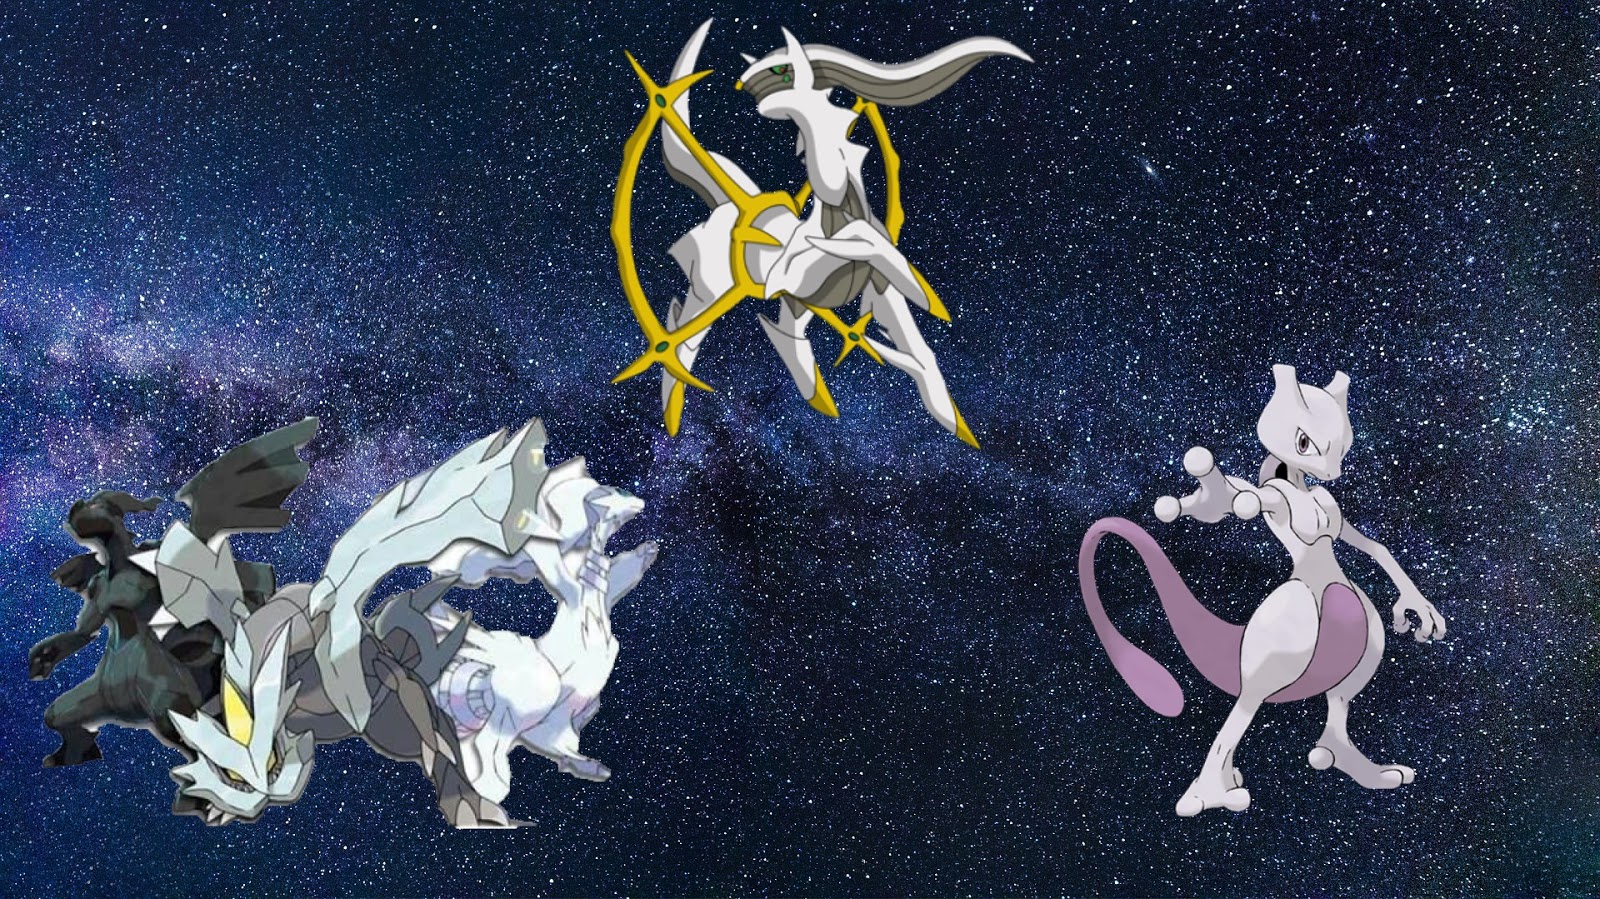 Como é possível existirem dois Mewtwos diferentes? – Pokémon Mythology